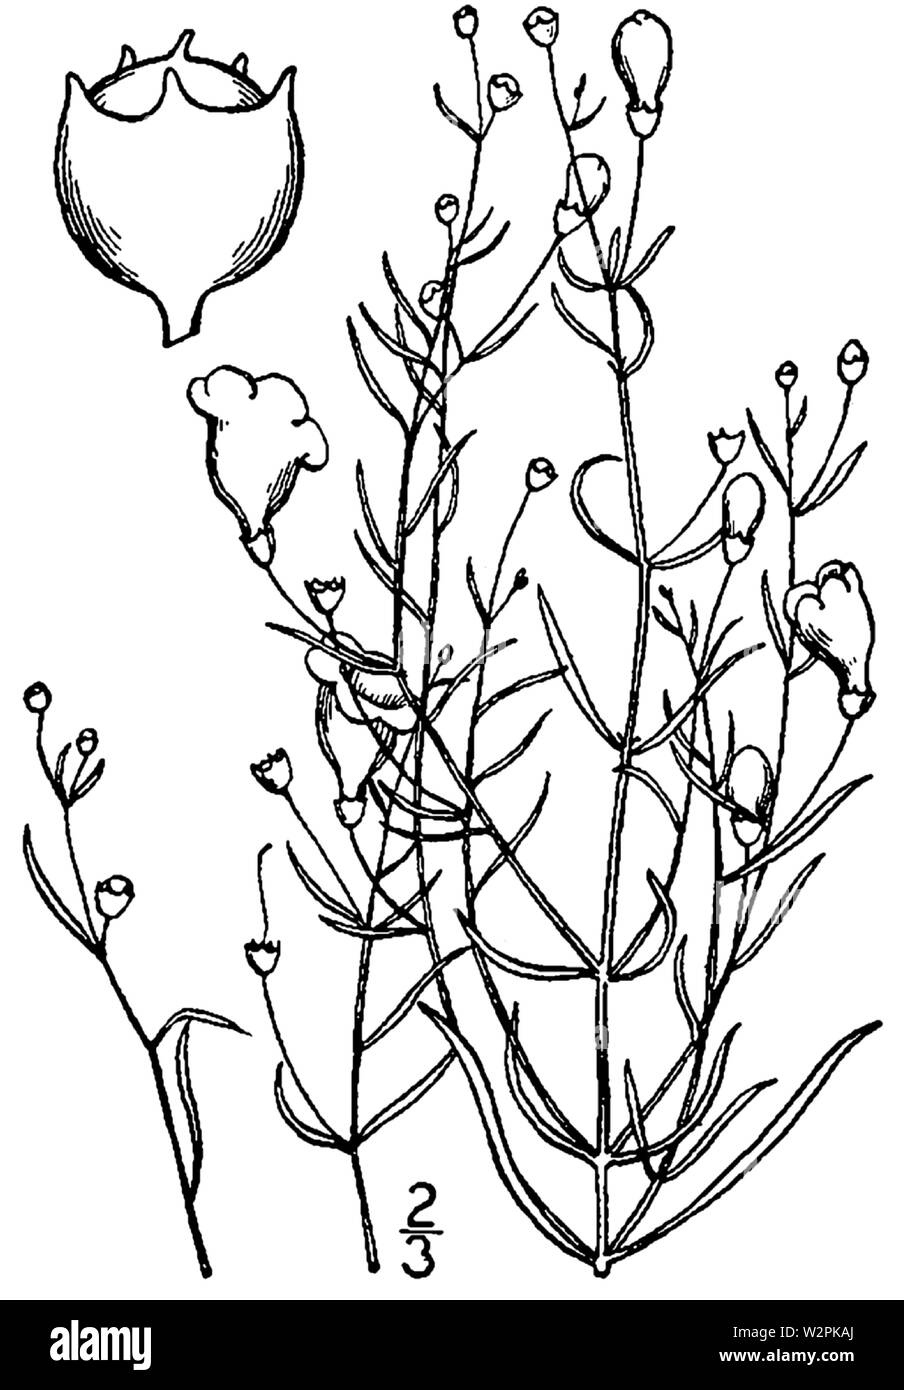 Agalinis setacea drawing Stock Photo